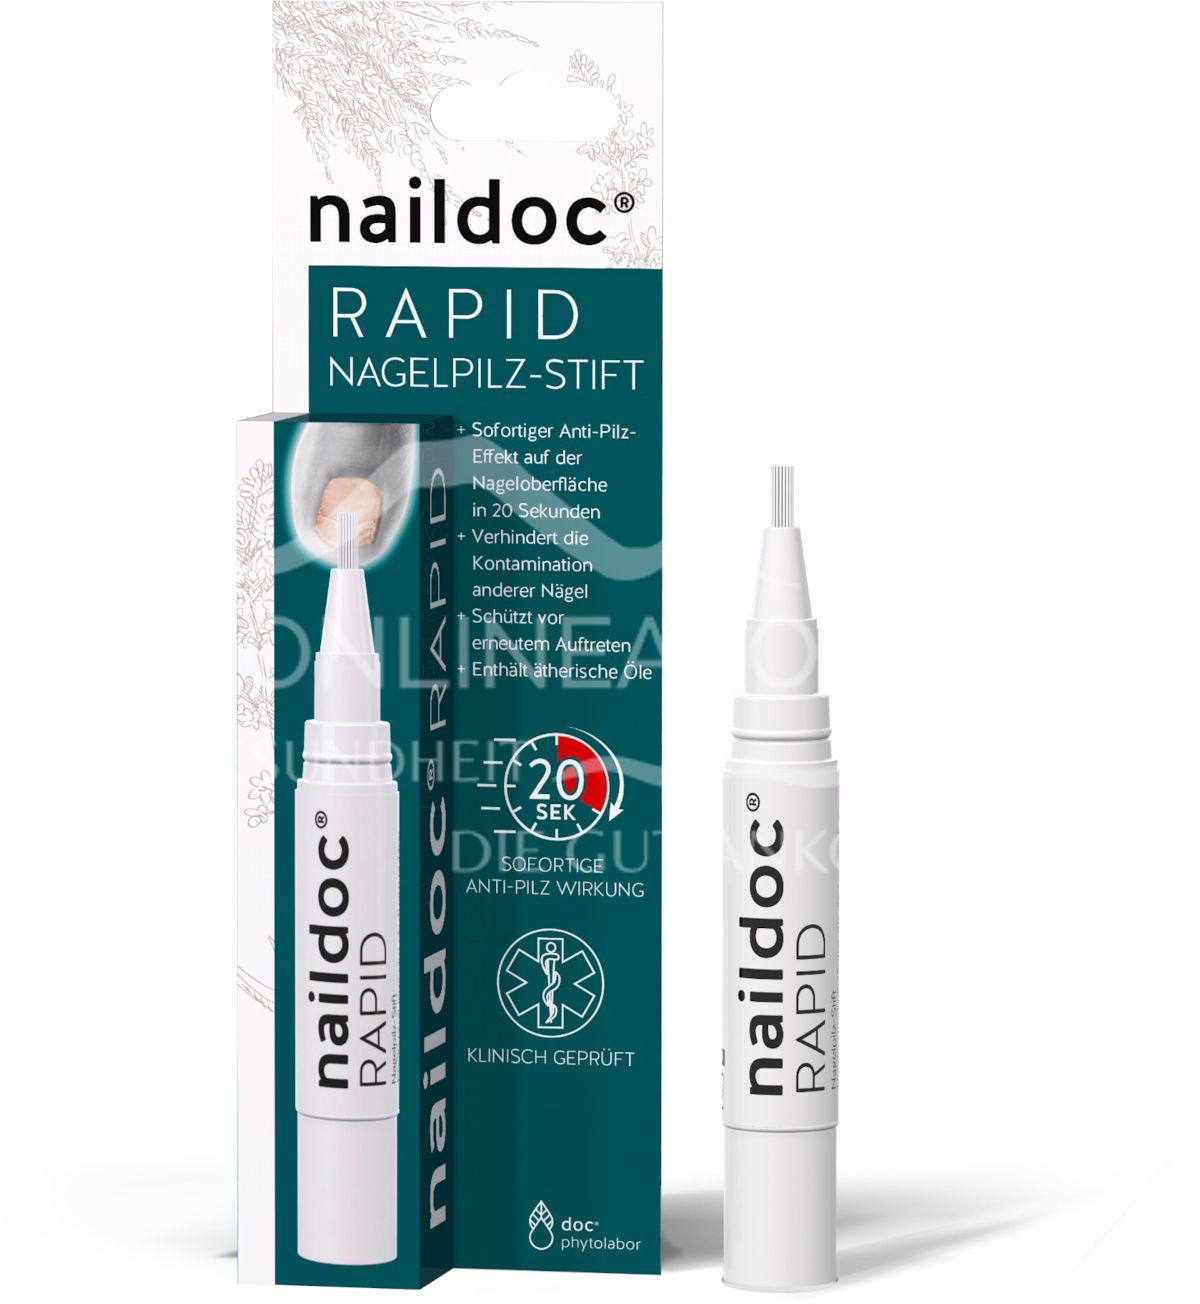 naildoc® RAPID Nagelpilz-Stift